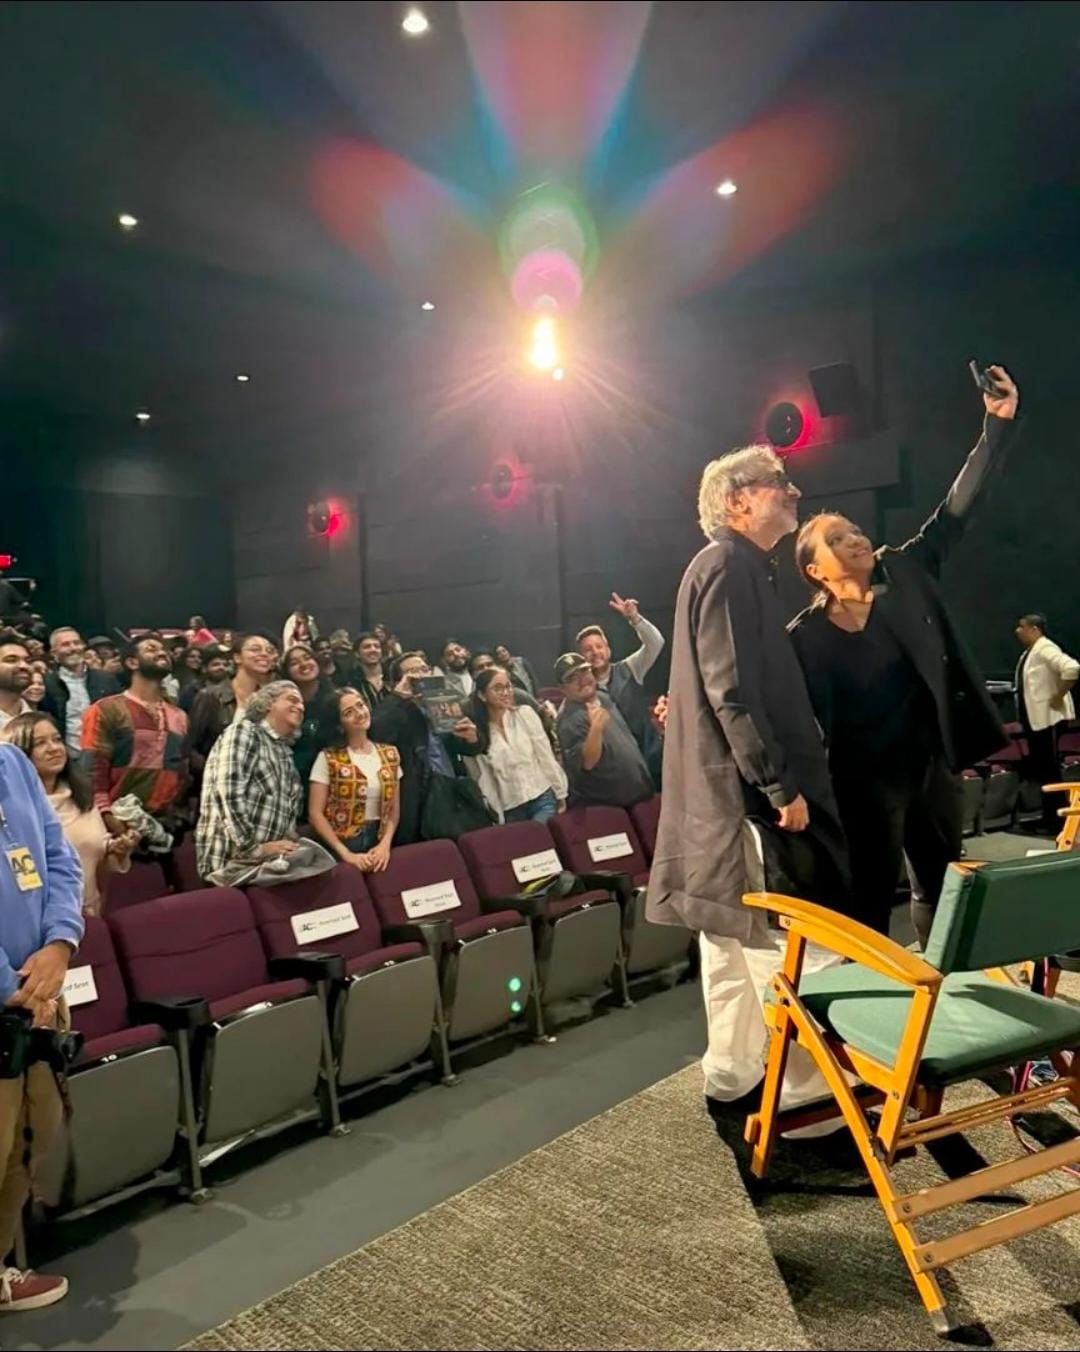 लॉस एंजेलिस के एयरो थिएटर में चला संजय लीला भंसाली की फिल्म "गंगुबाई काठियावाड़ी" का जादू, दर्शक हुए प्रभावित 45943